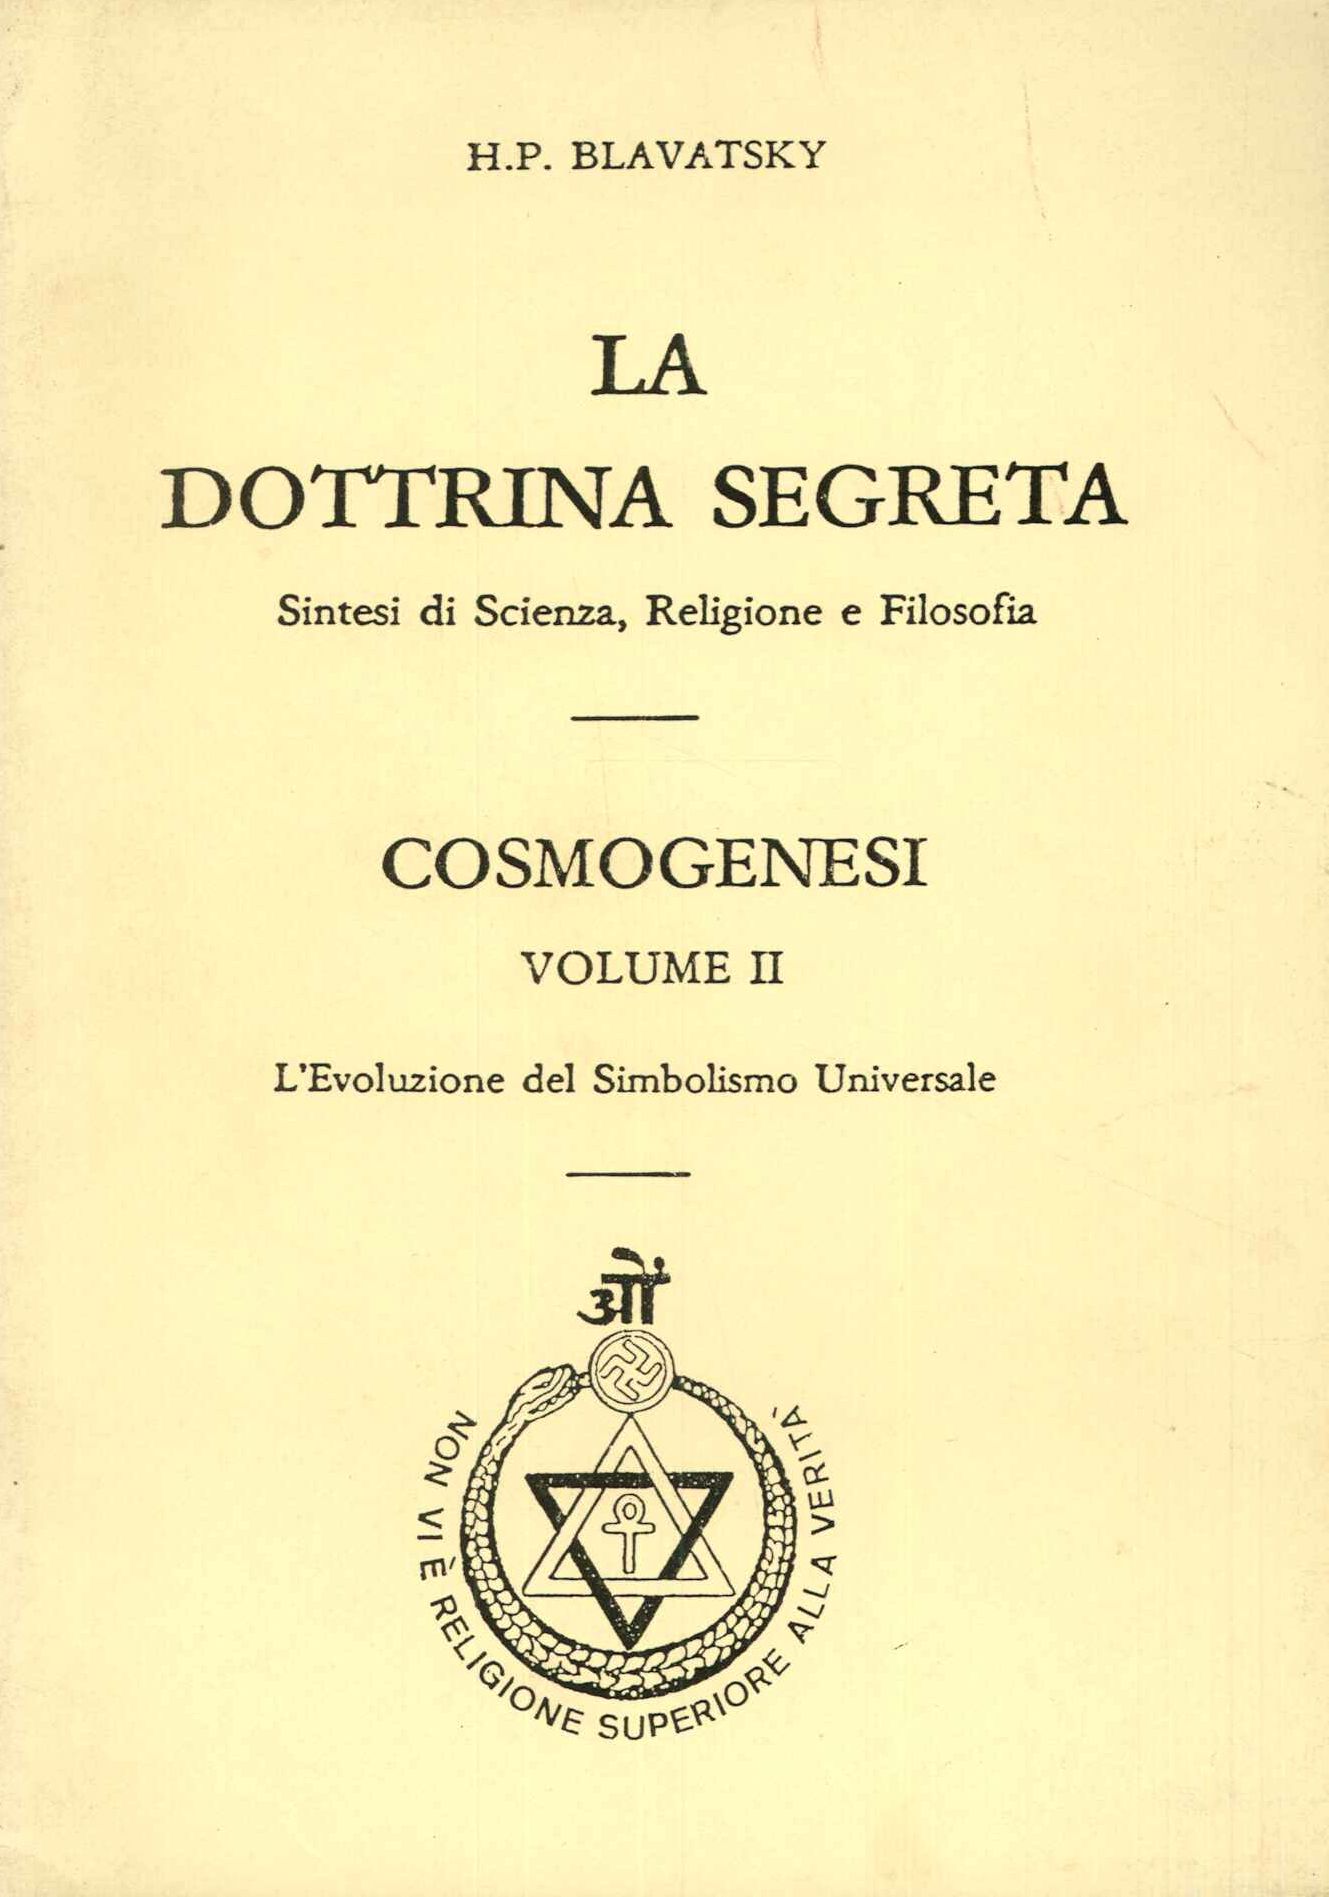 La dottrina segreta cosmogenesi vol. II°